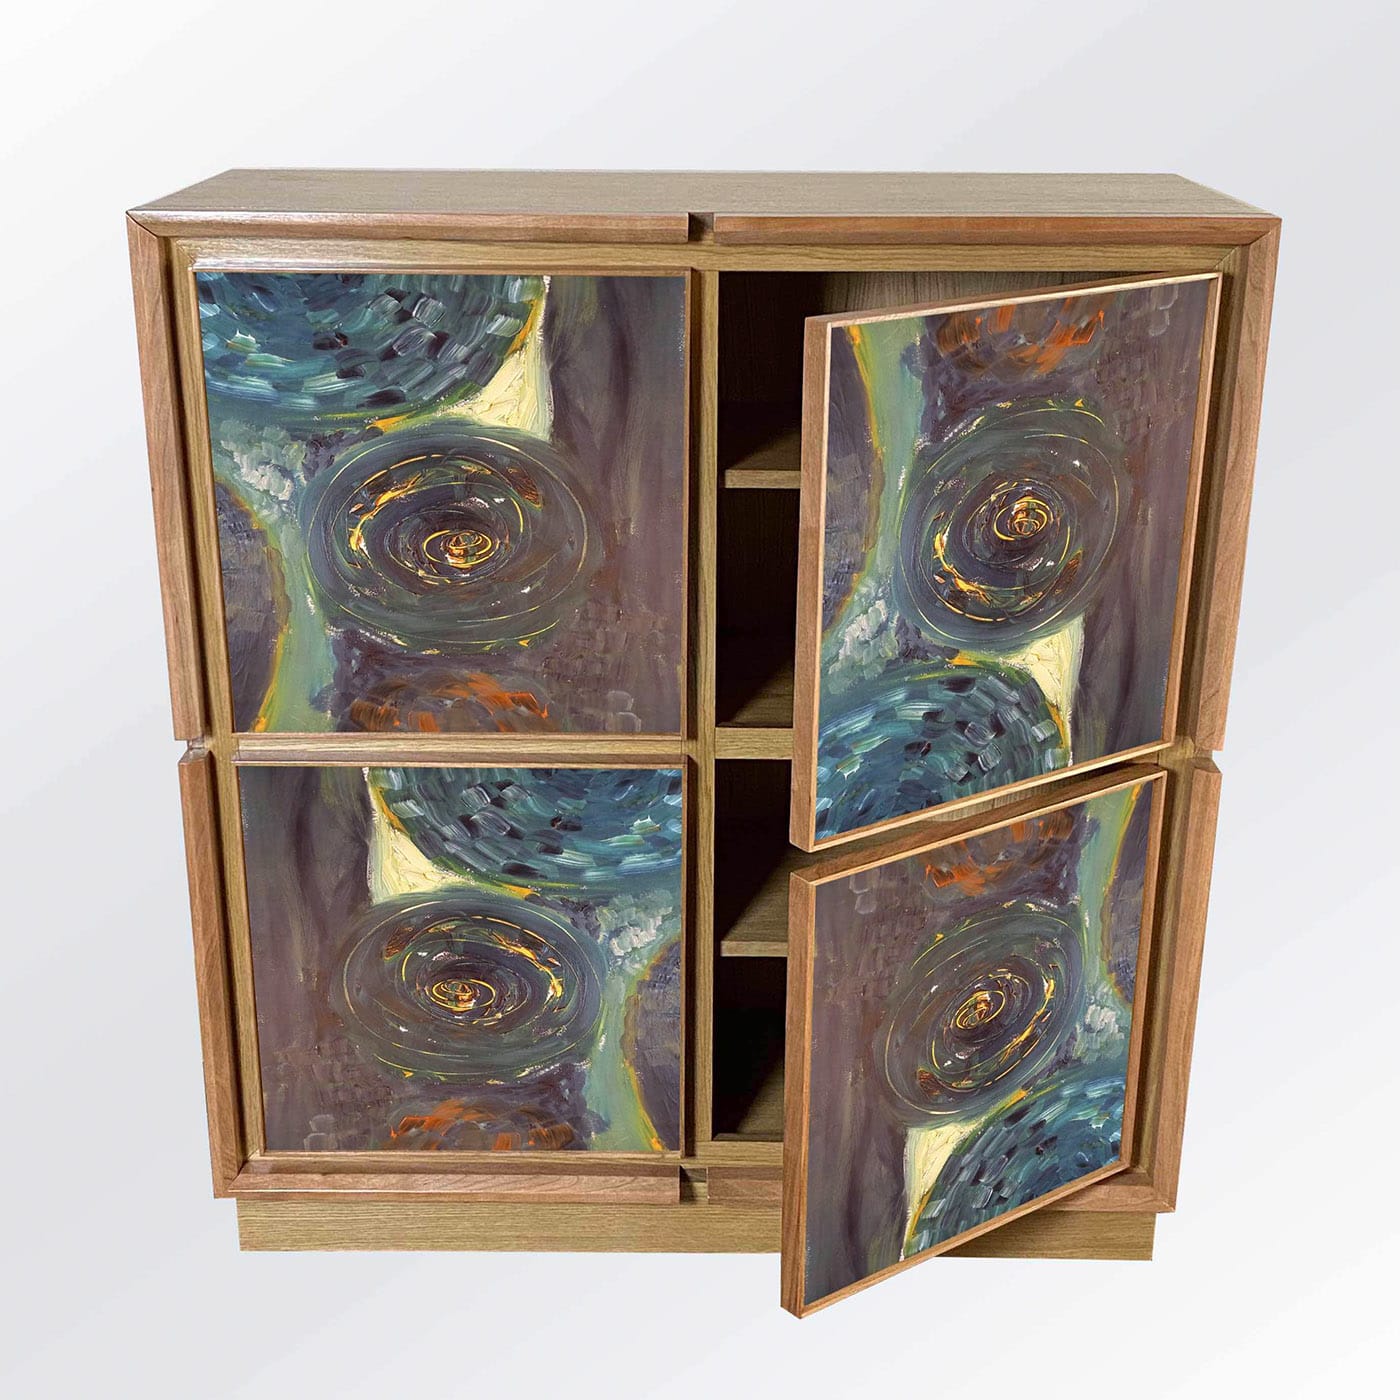 Astratta Sette Cabinet by Mascia Meccani - Meccani Design